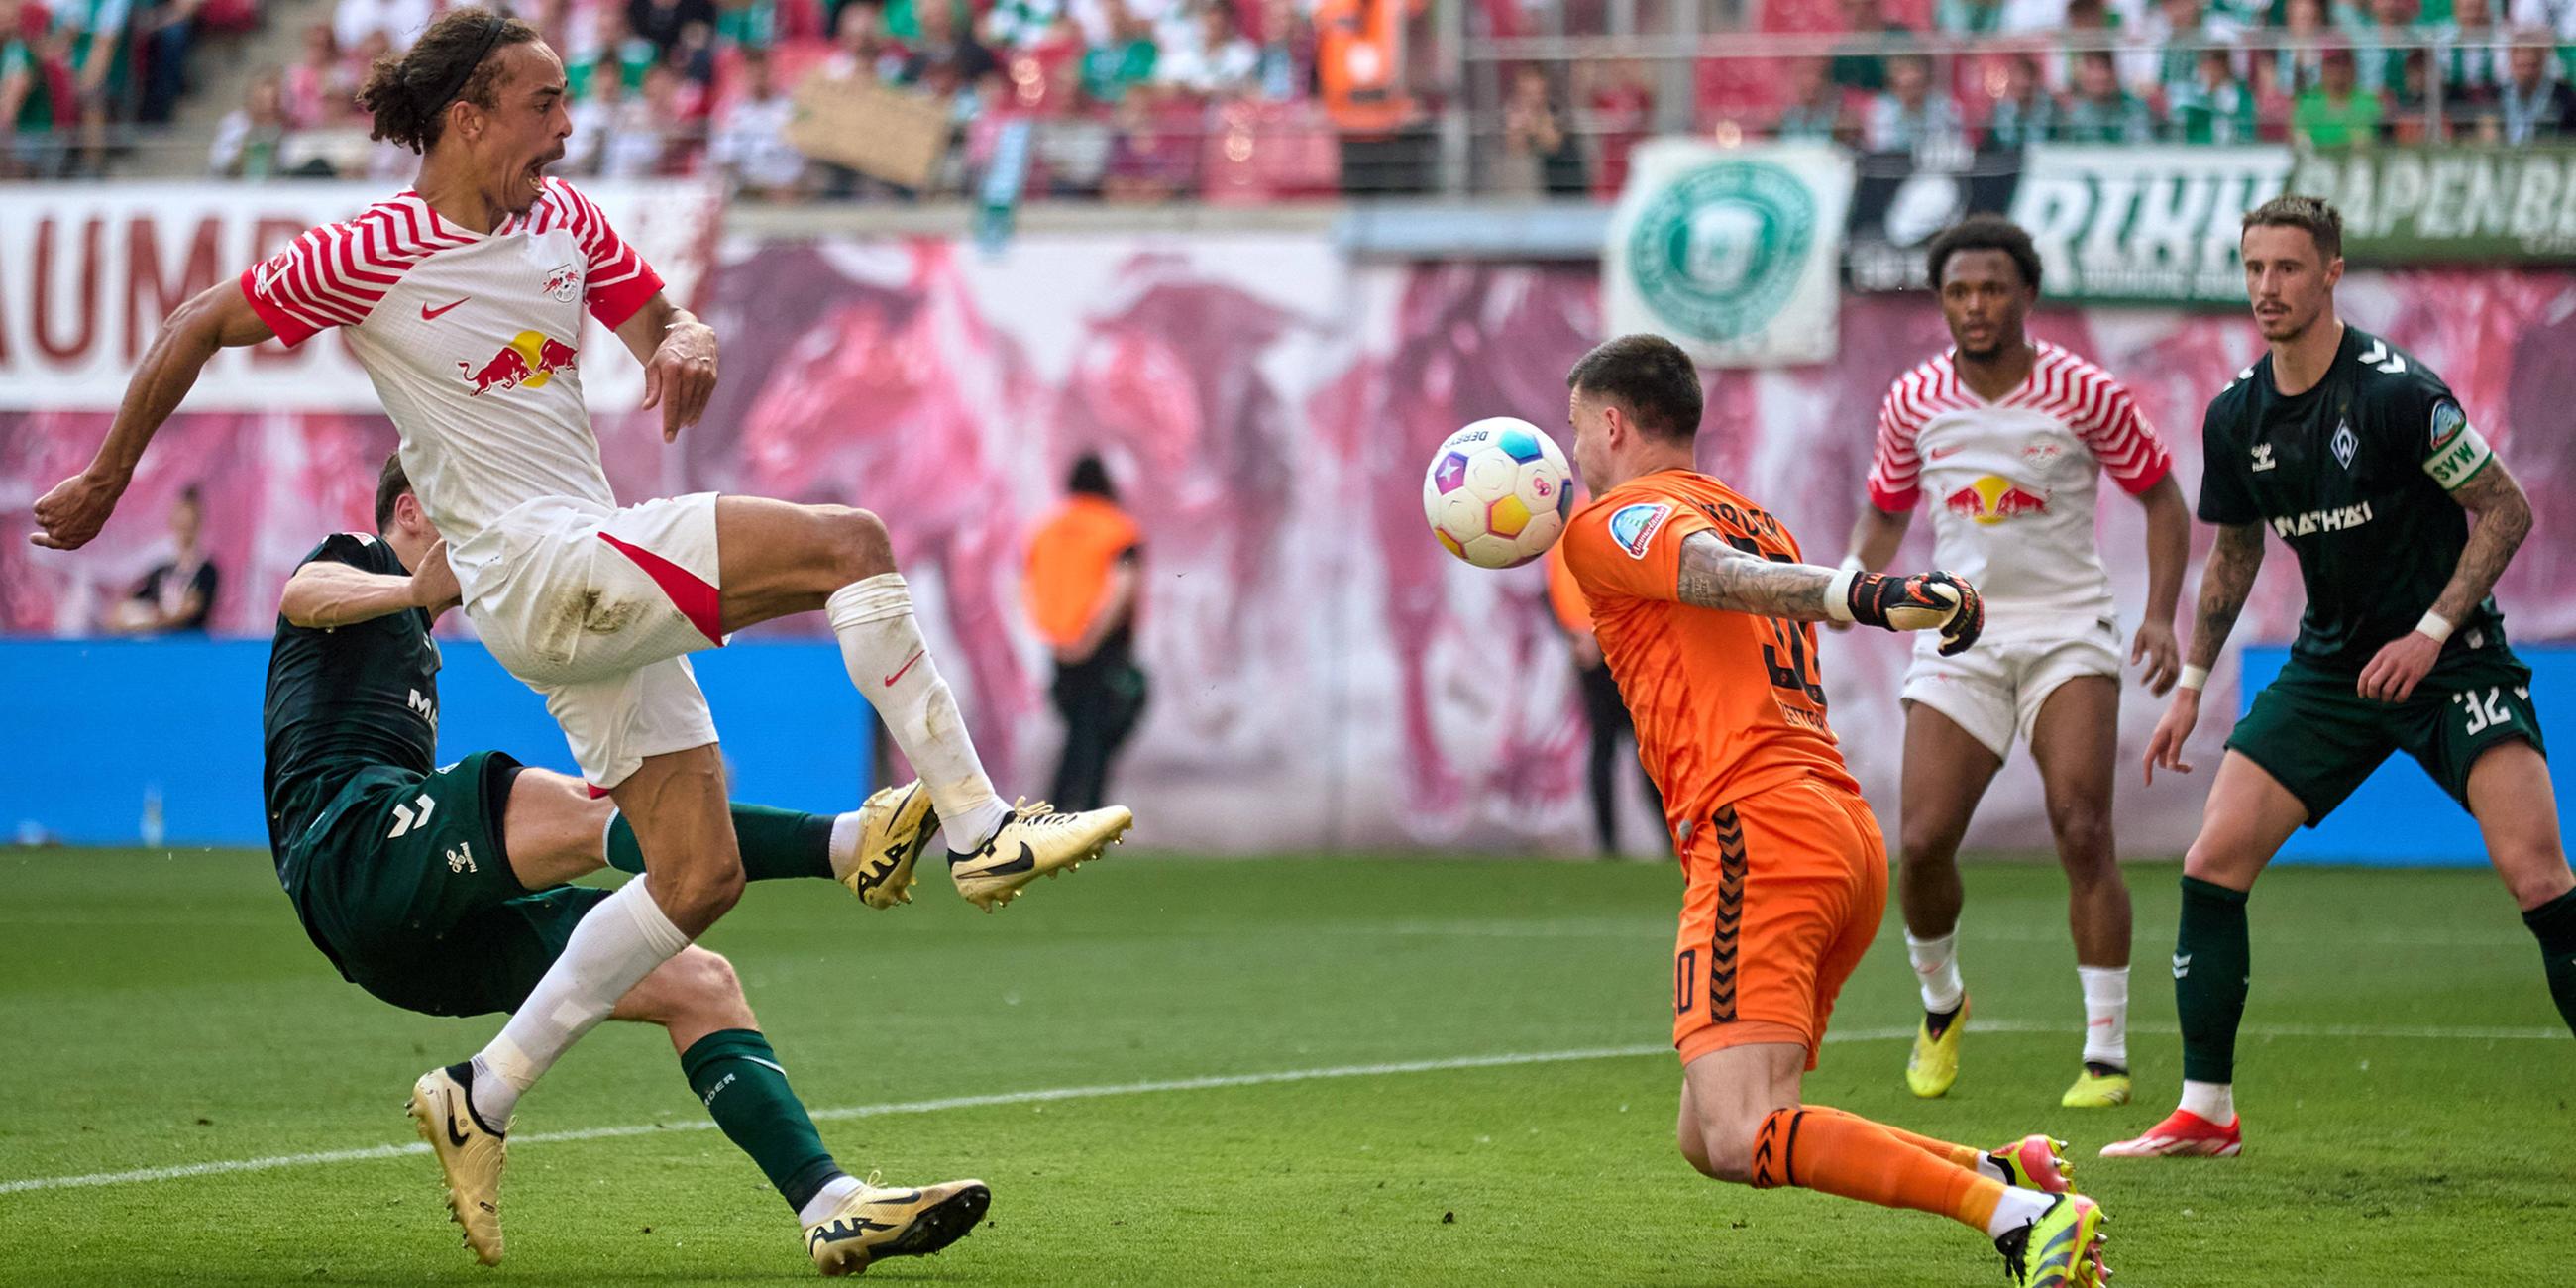 Yussuf Poulsen (RB Leipzig) schießt aufs Tor. Michael Zetterer (Werder Bremen) pariert.